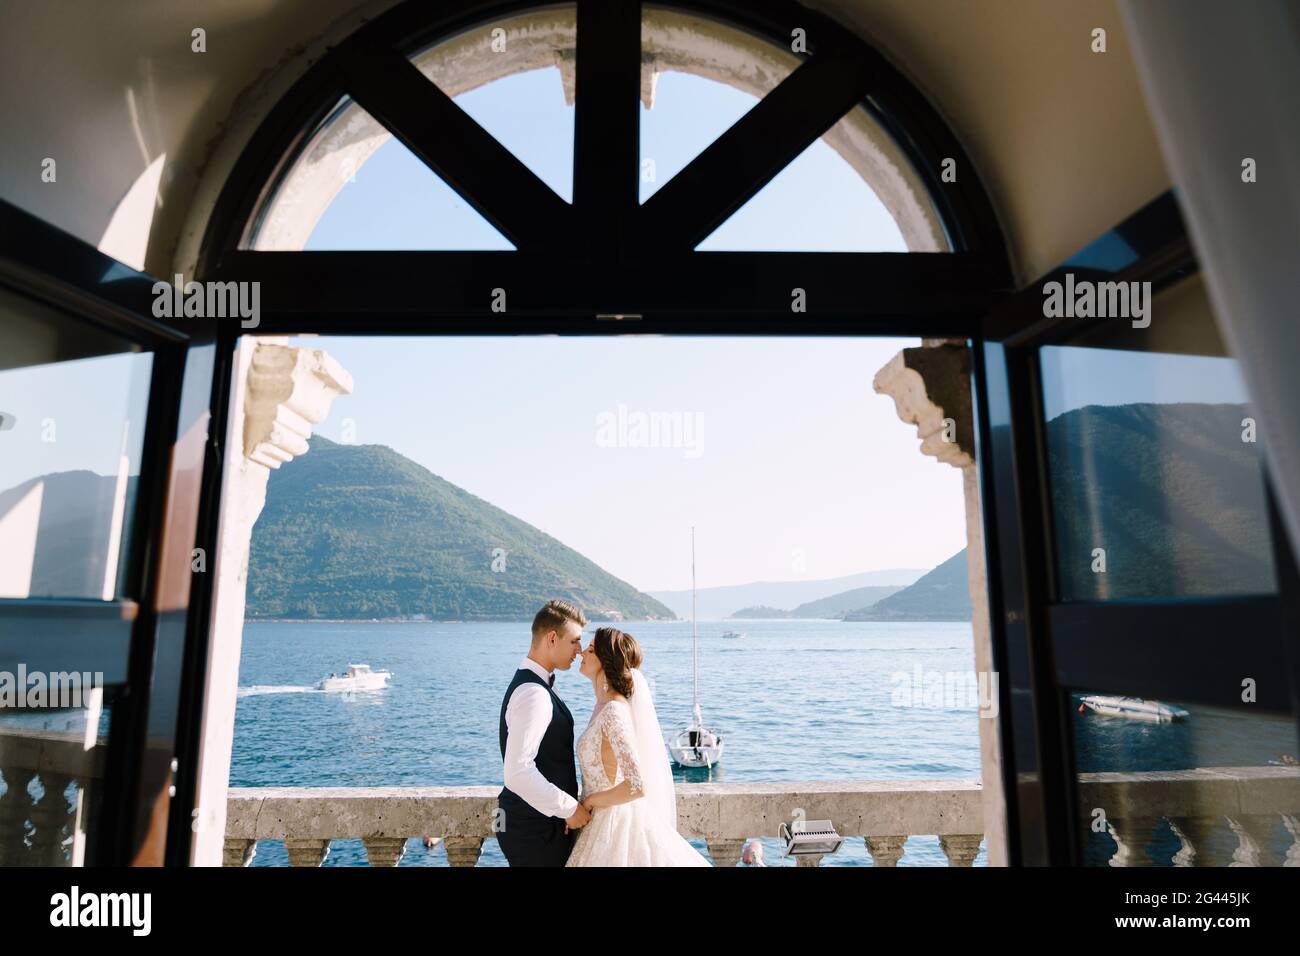 La mariée et le marié sont debout sur le balcon de l'hôtel donnant sur la mer, un regard à travers la vieille fenêtre ouverte. Les arts plastiques avec Banque D'Images